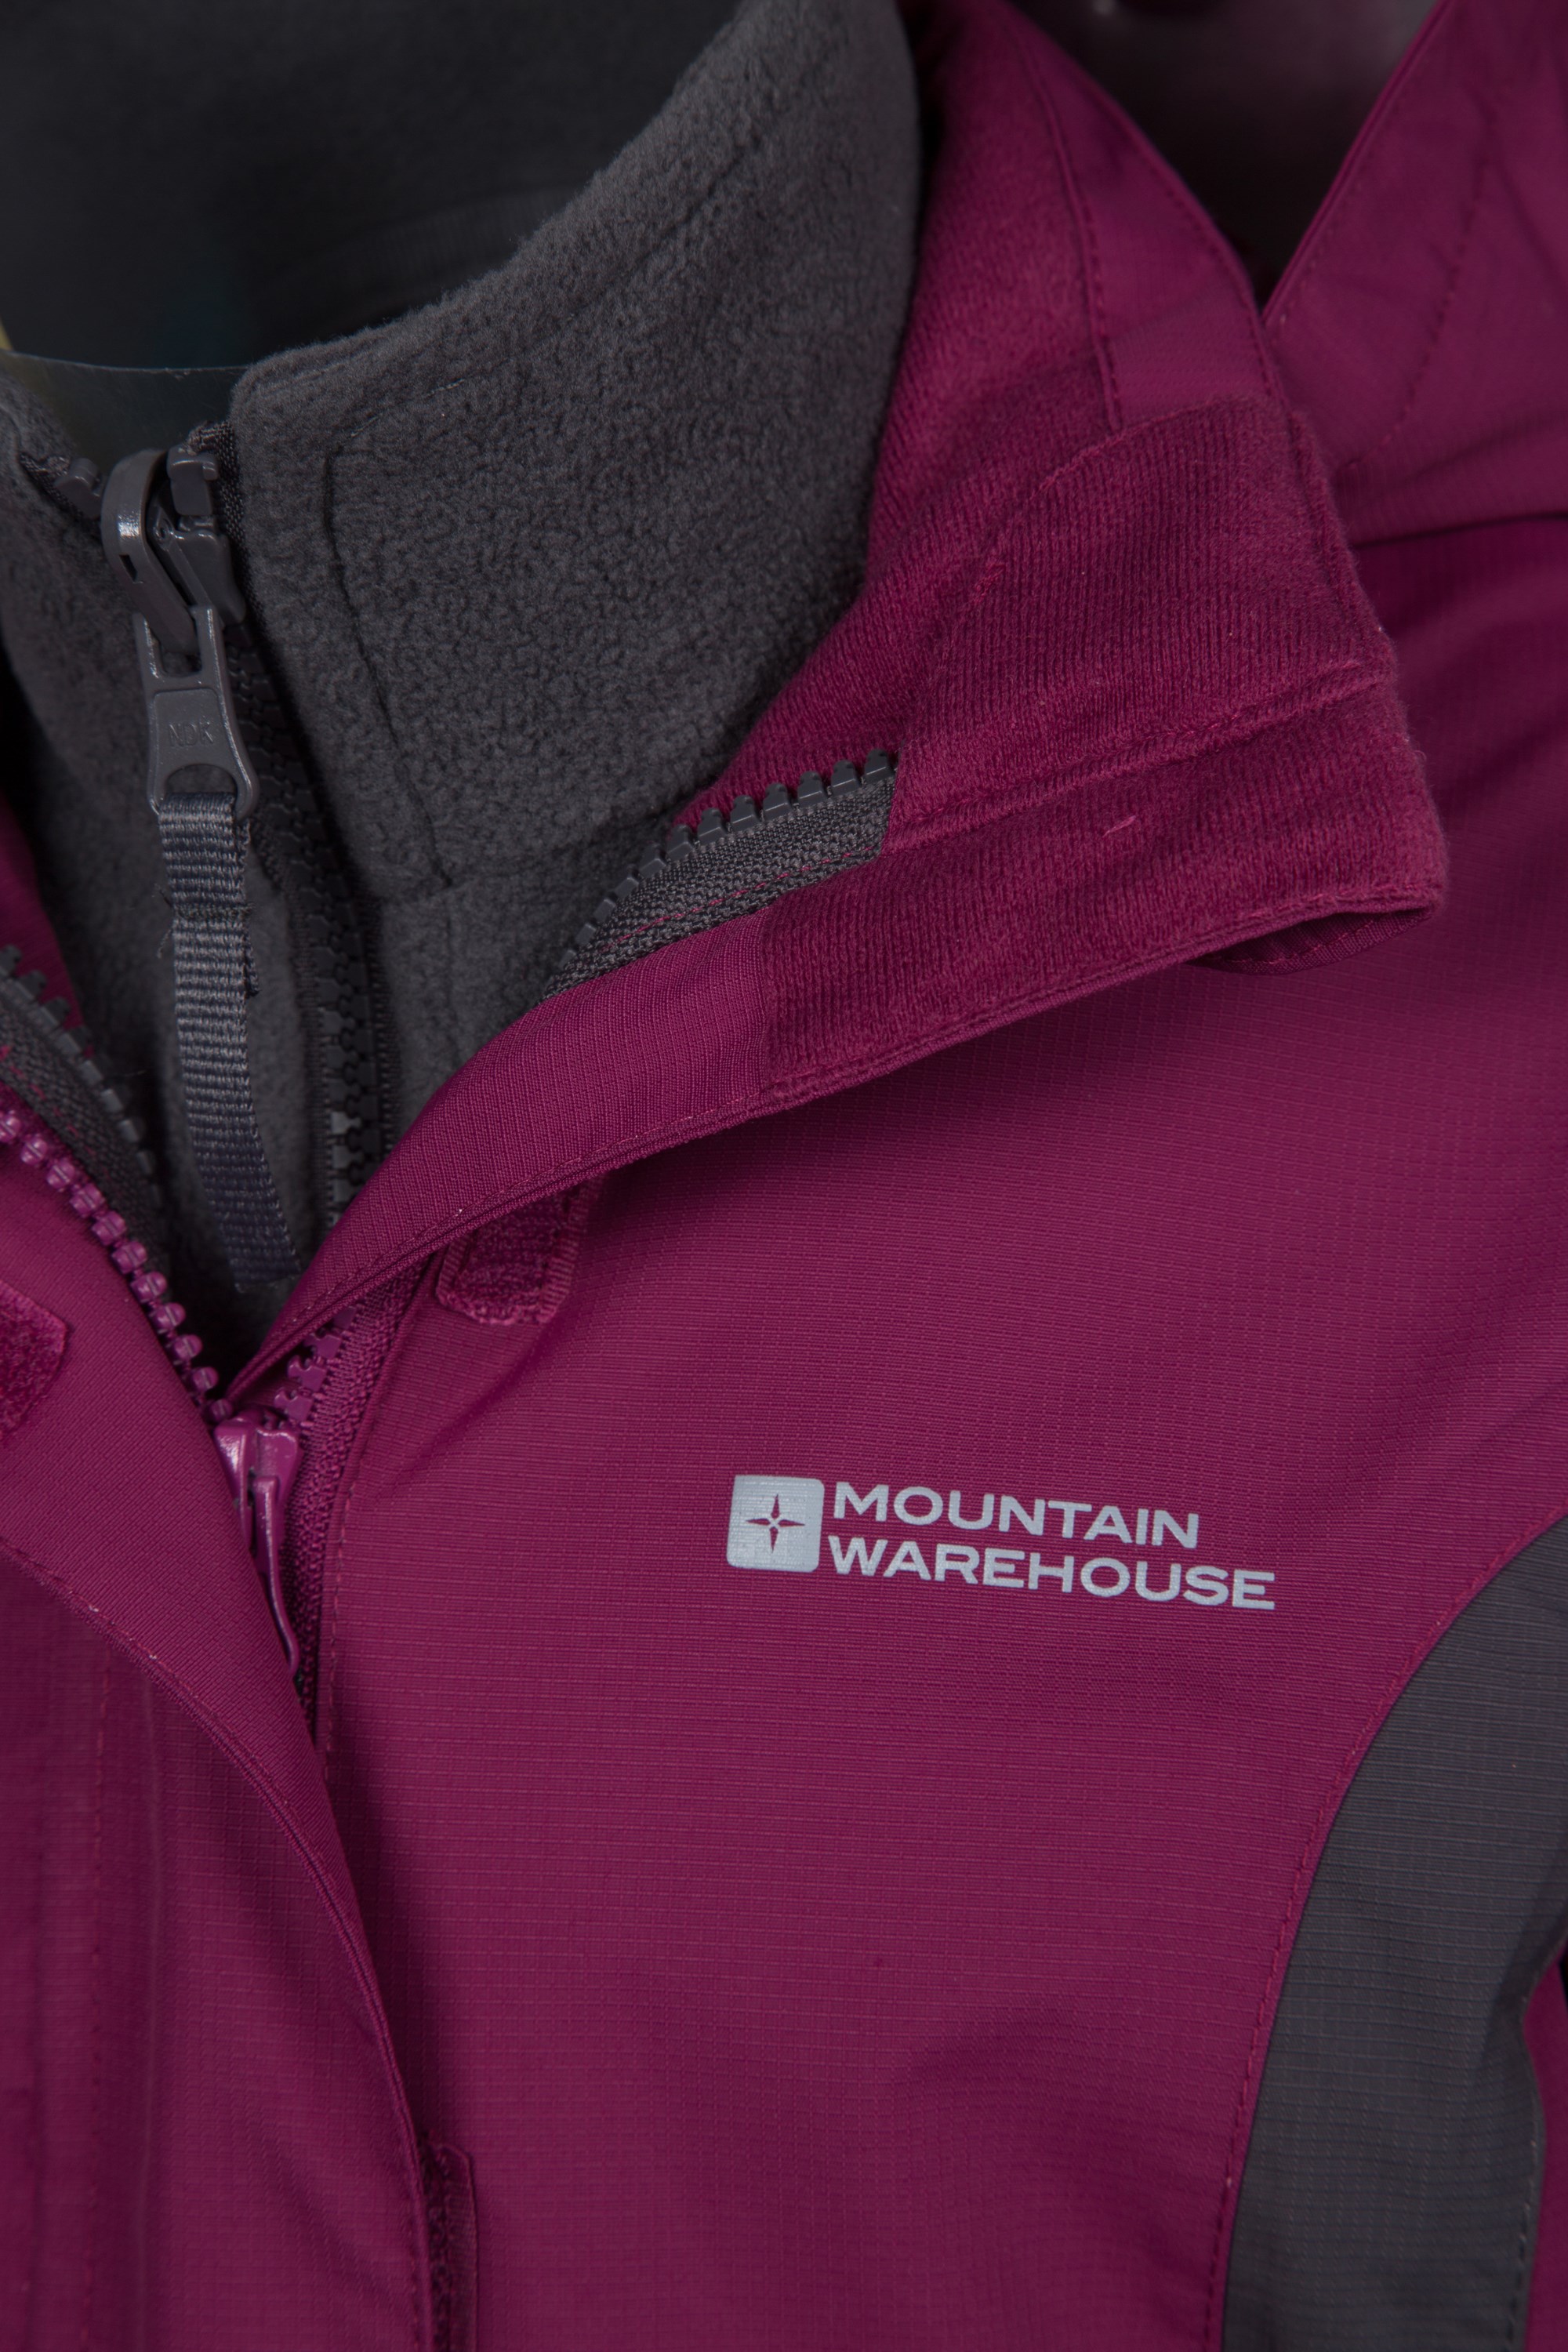 Lightning 3 in 1 Kids | Warehouse Mountain NZ Jacket Waterproof